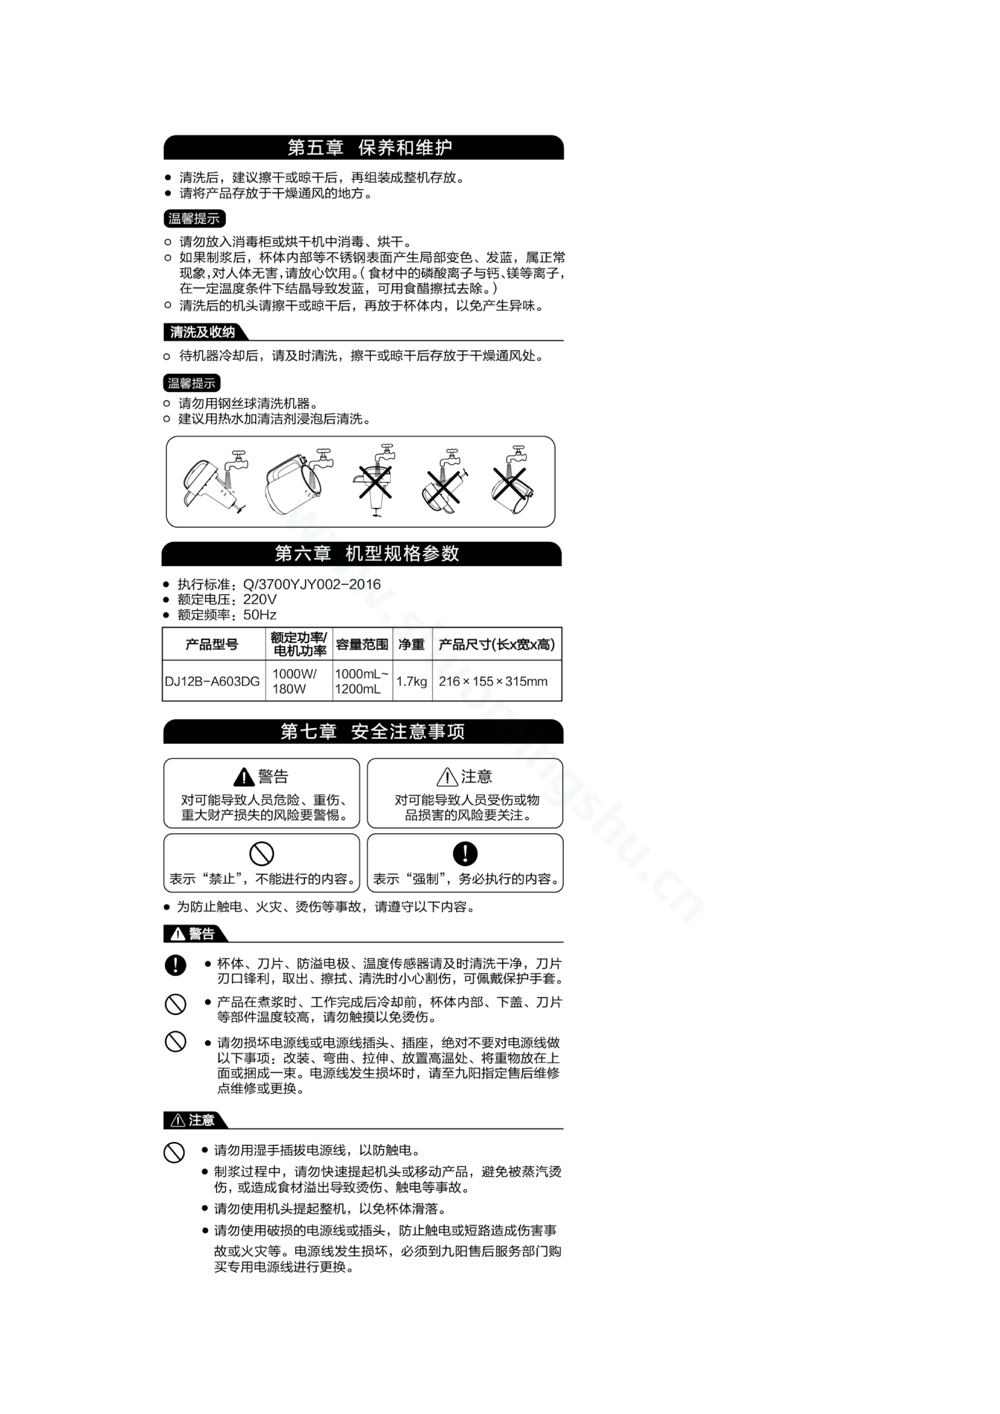 九阳豆浆机DJ12B-A603DG-05说明书第4页